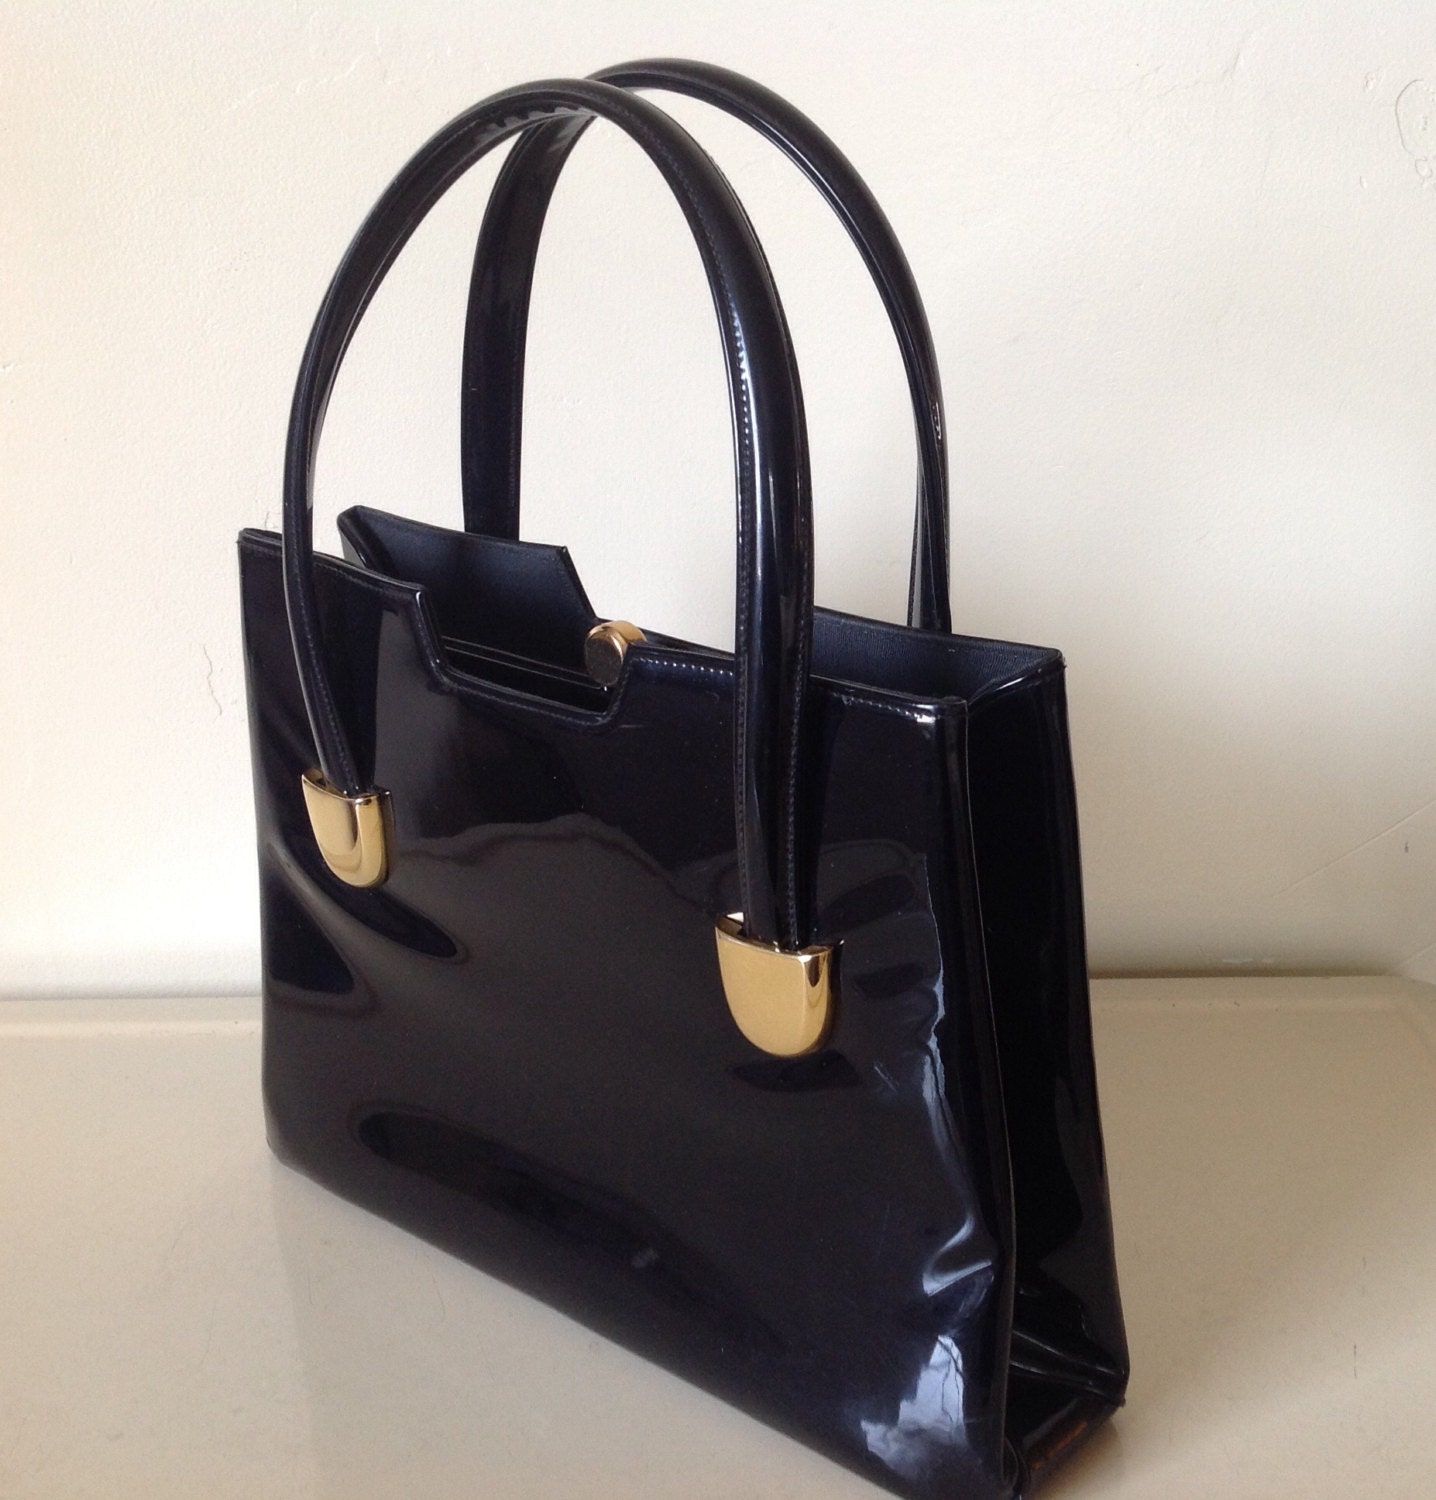 Vintage Lewis Black Patent Leather Handbag by TresconyAntiques